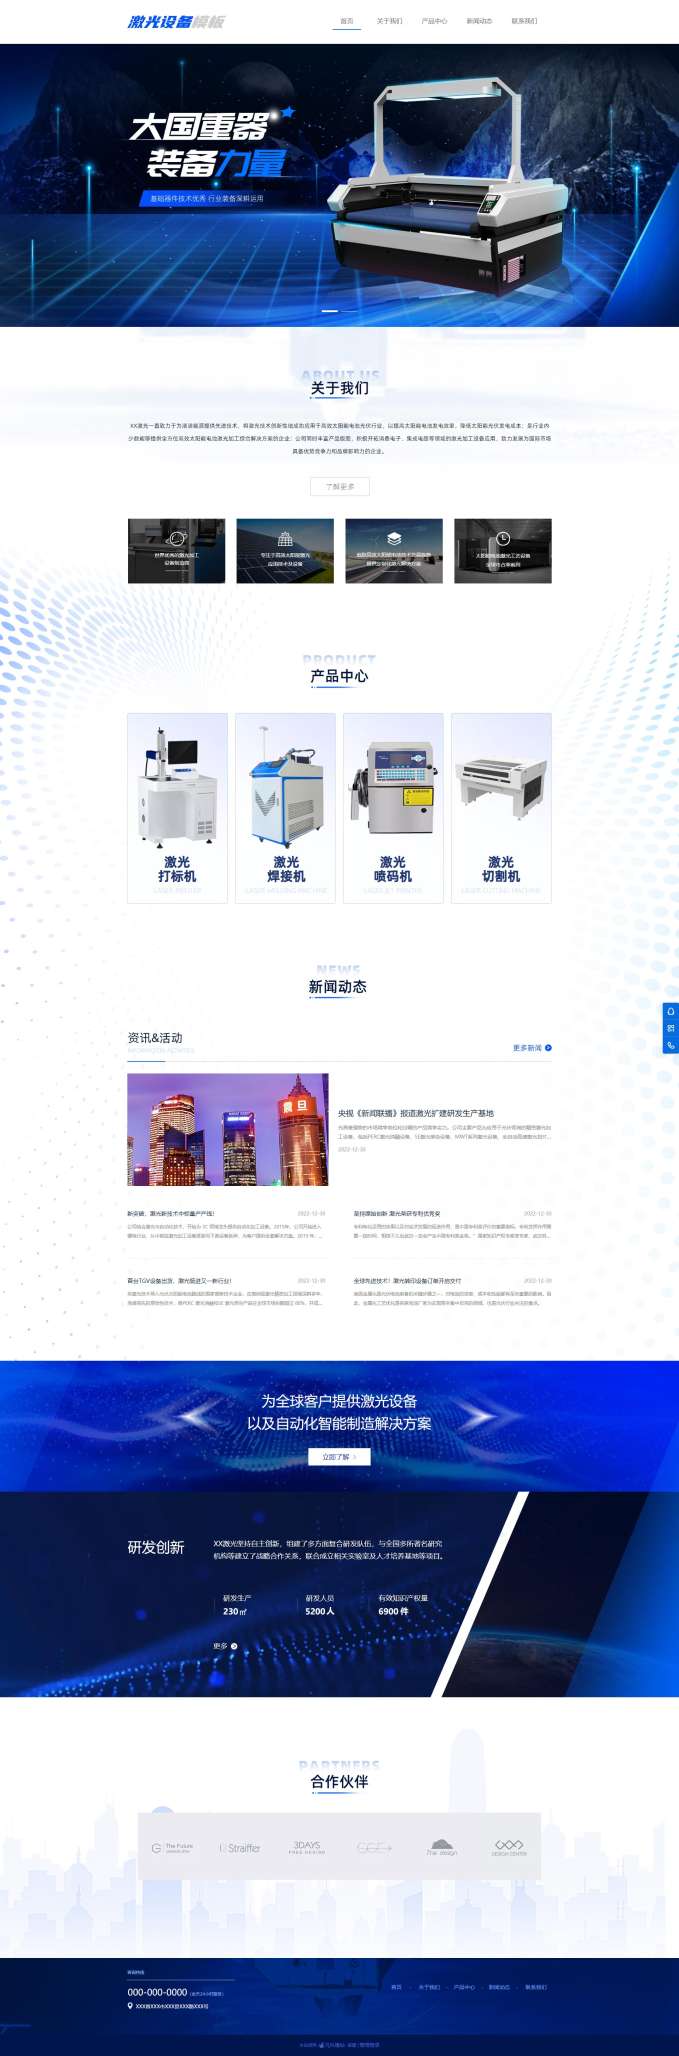 高端机械设备激光设备企业网站模板